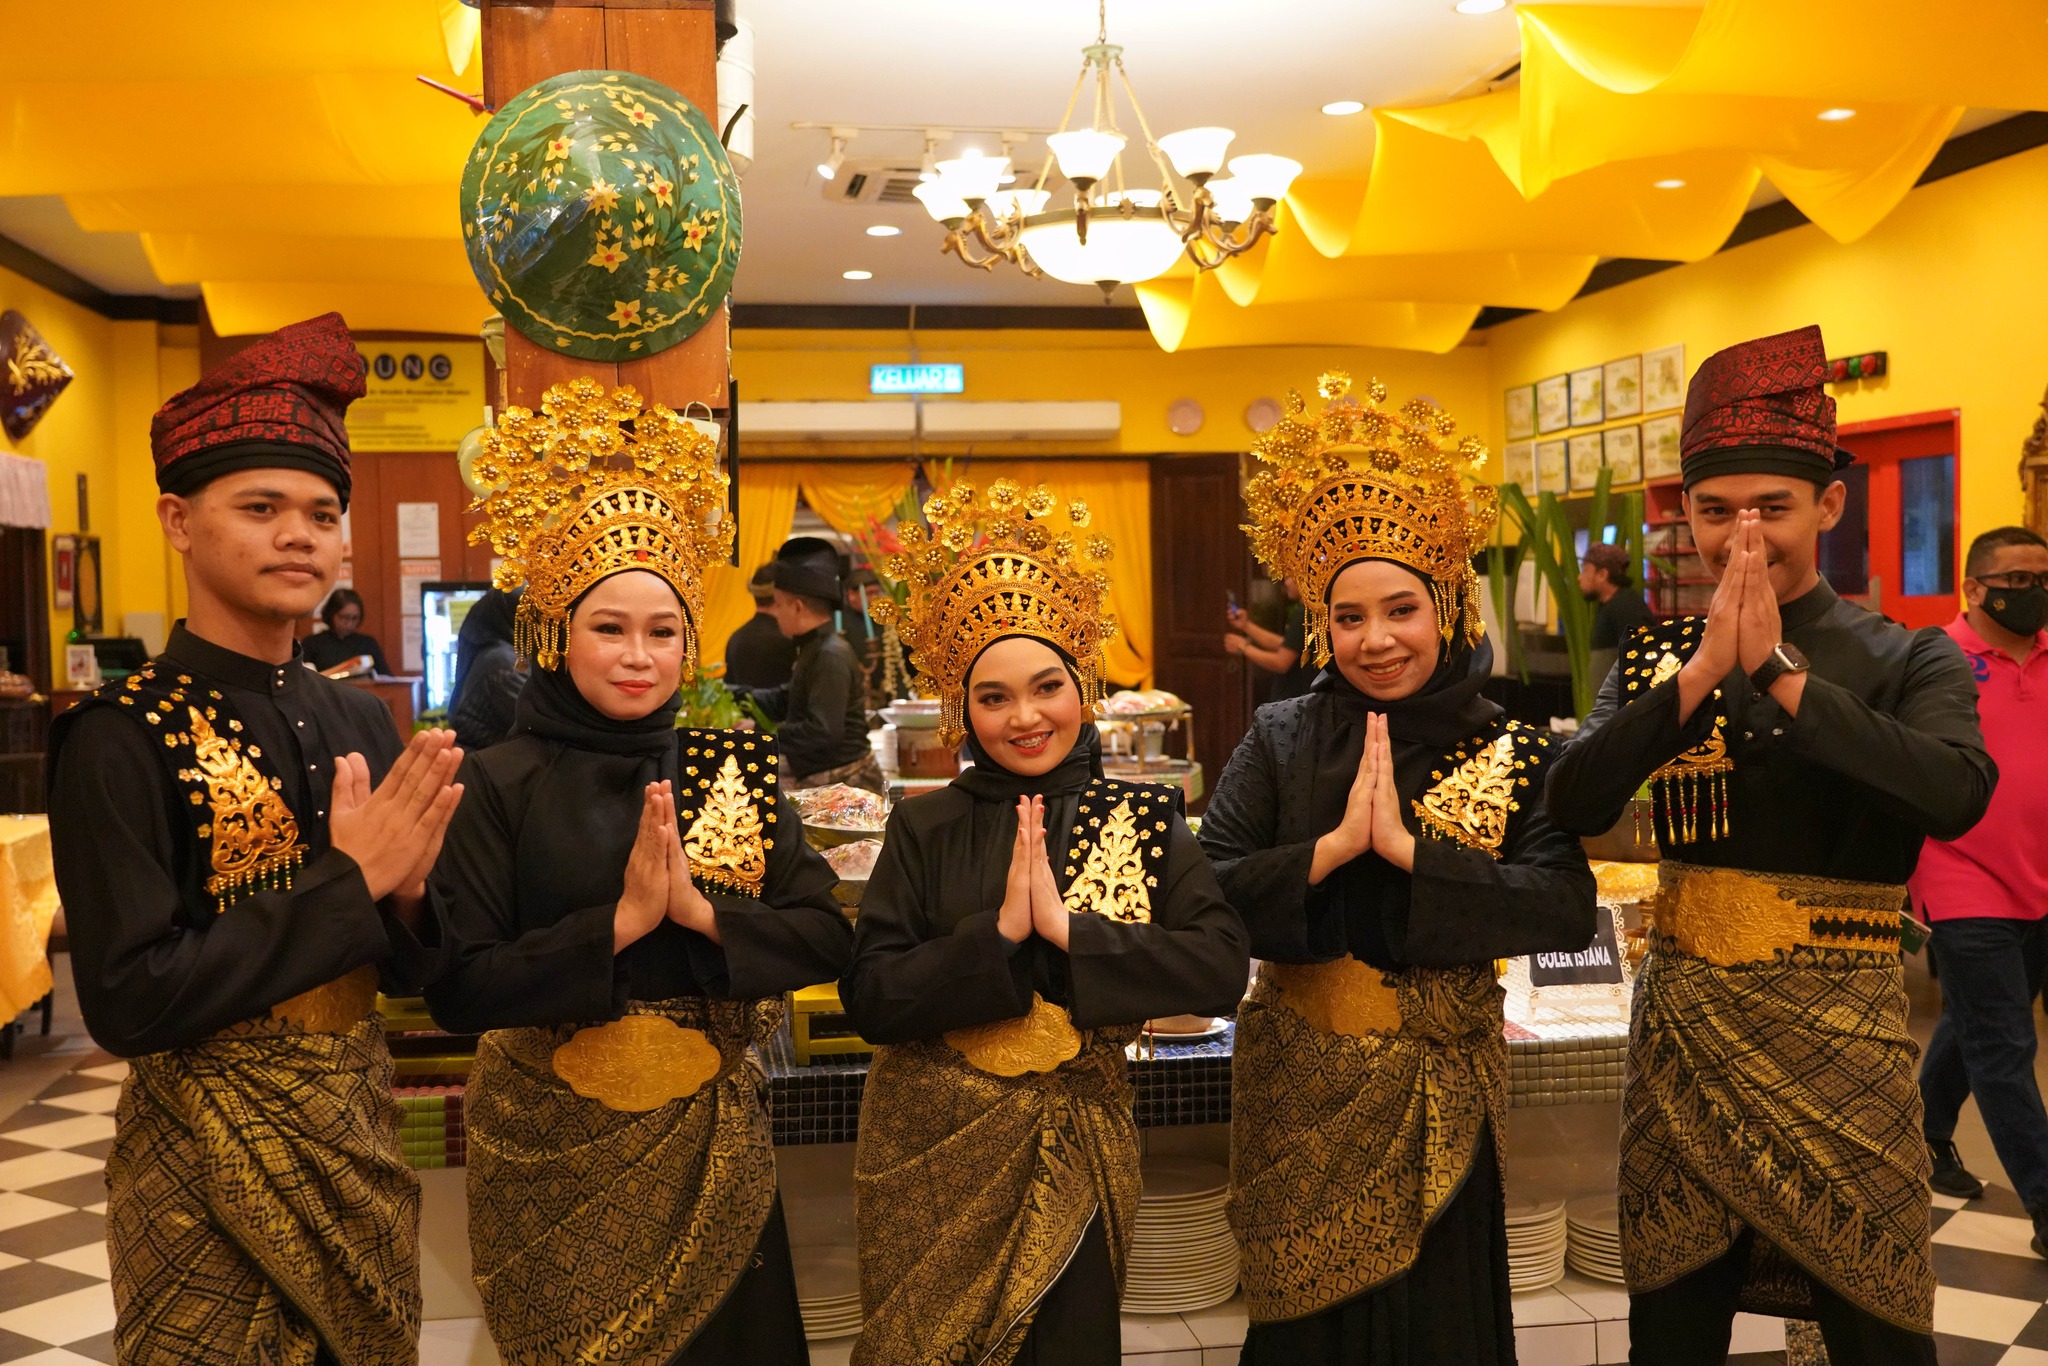 Harga bufet Ramadan naik tapi Restoran Rebung terima 10,000 pengunjung